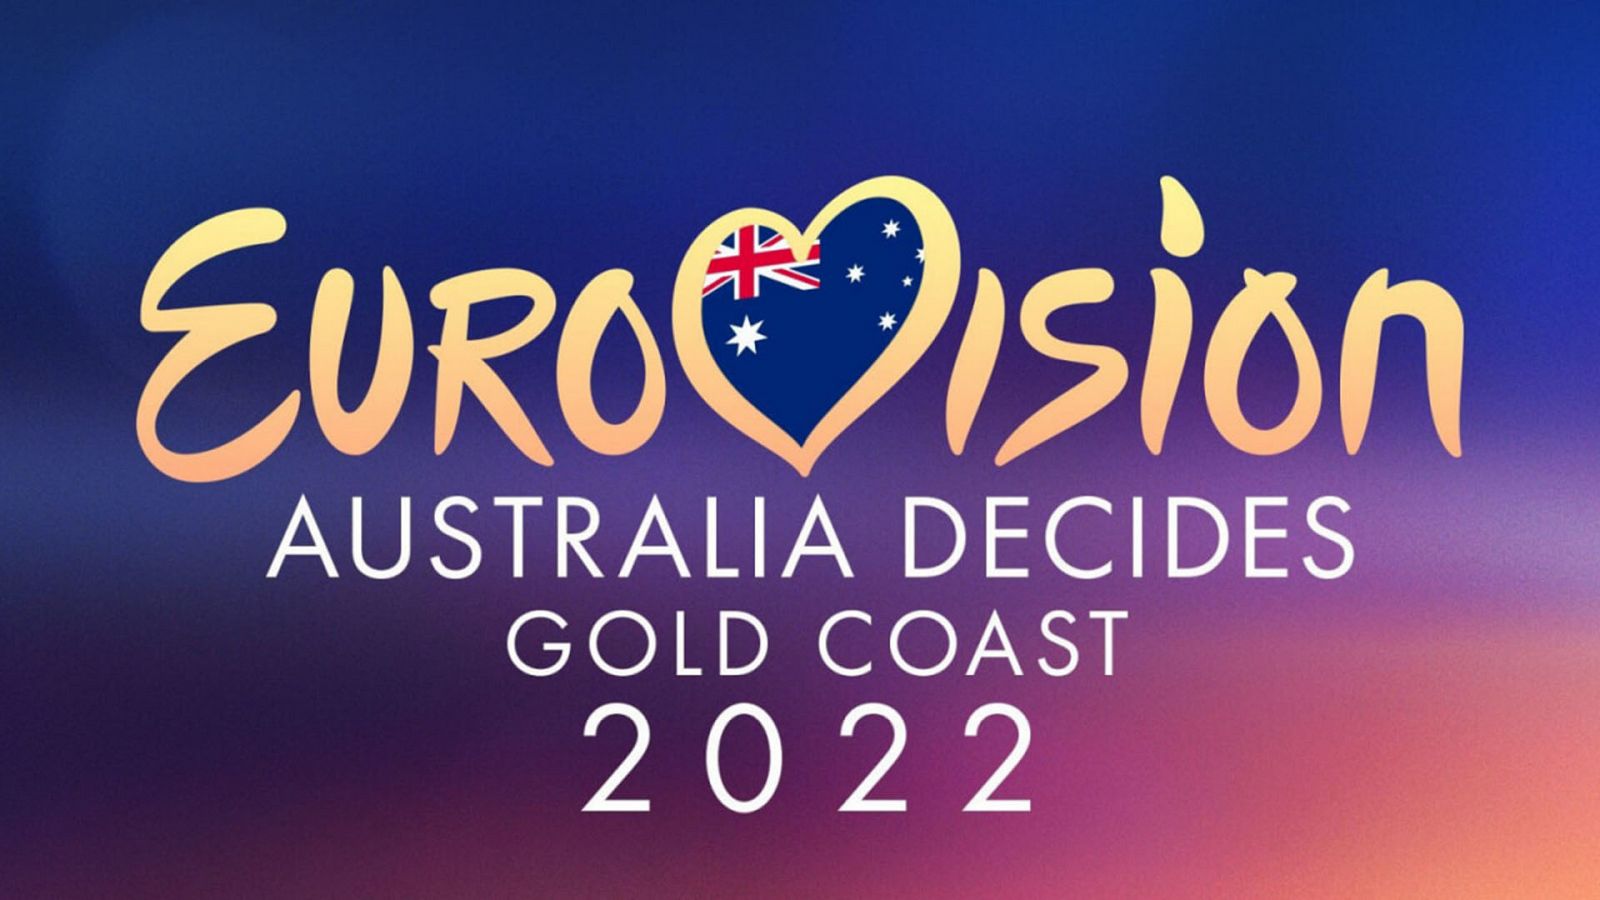 La tercera edición del 'Australia Decides' se celebra este sábado 26 de febrero en Gold Coast